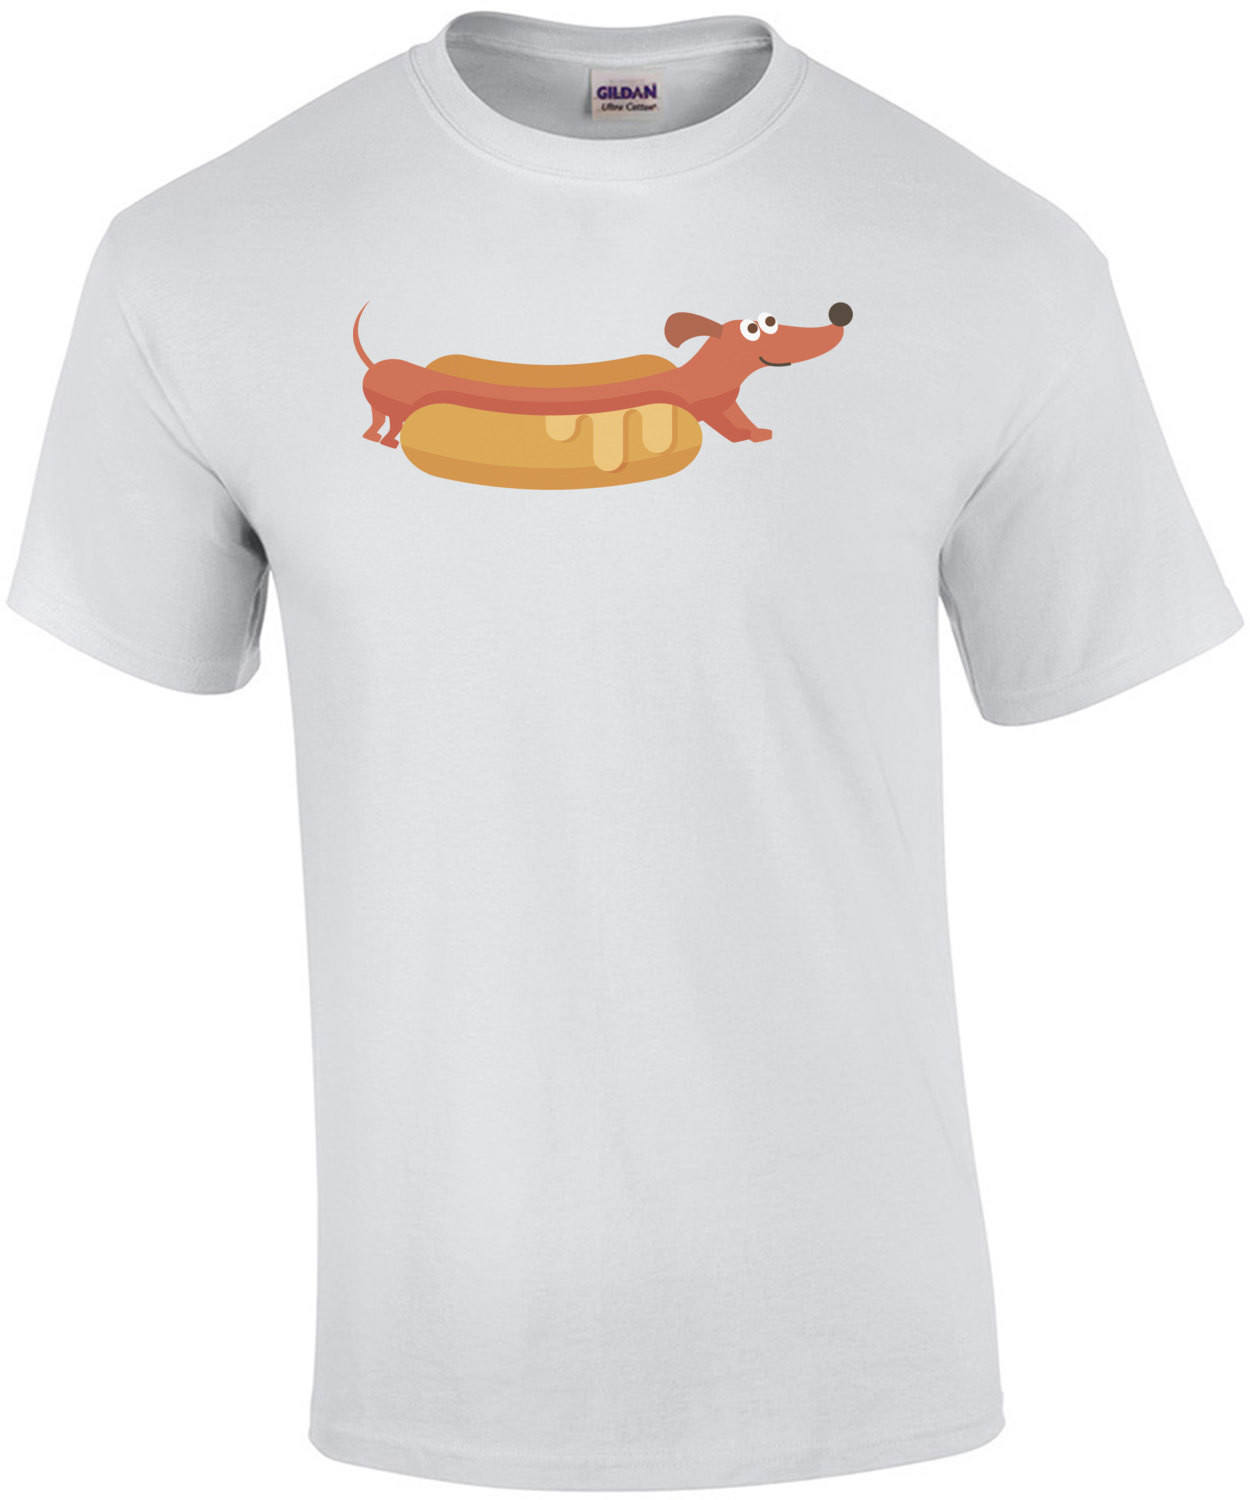 Hot Dog - Dachshund / Wiener Dog / Wiener / Weenie Dog / Weenie T-Shirt 